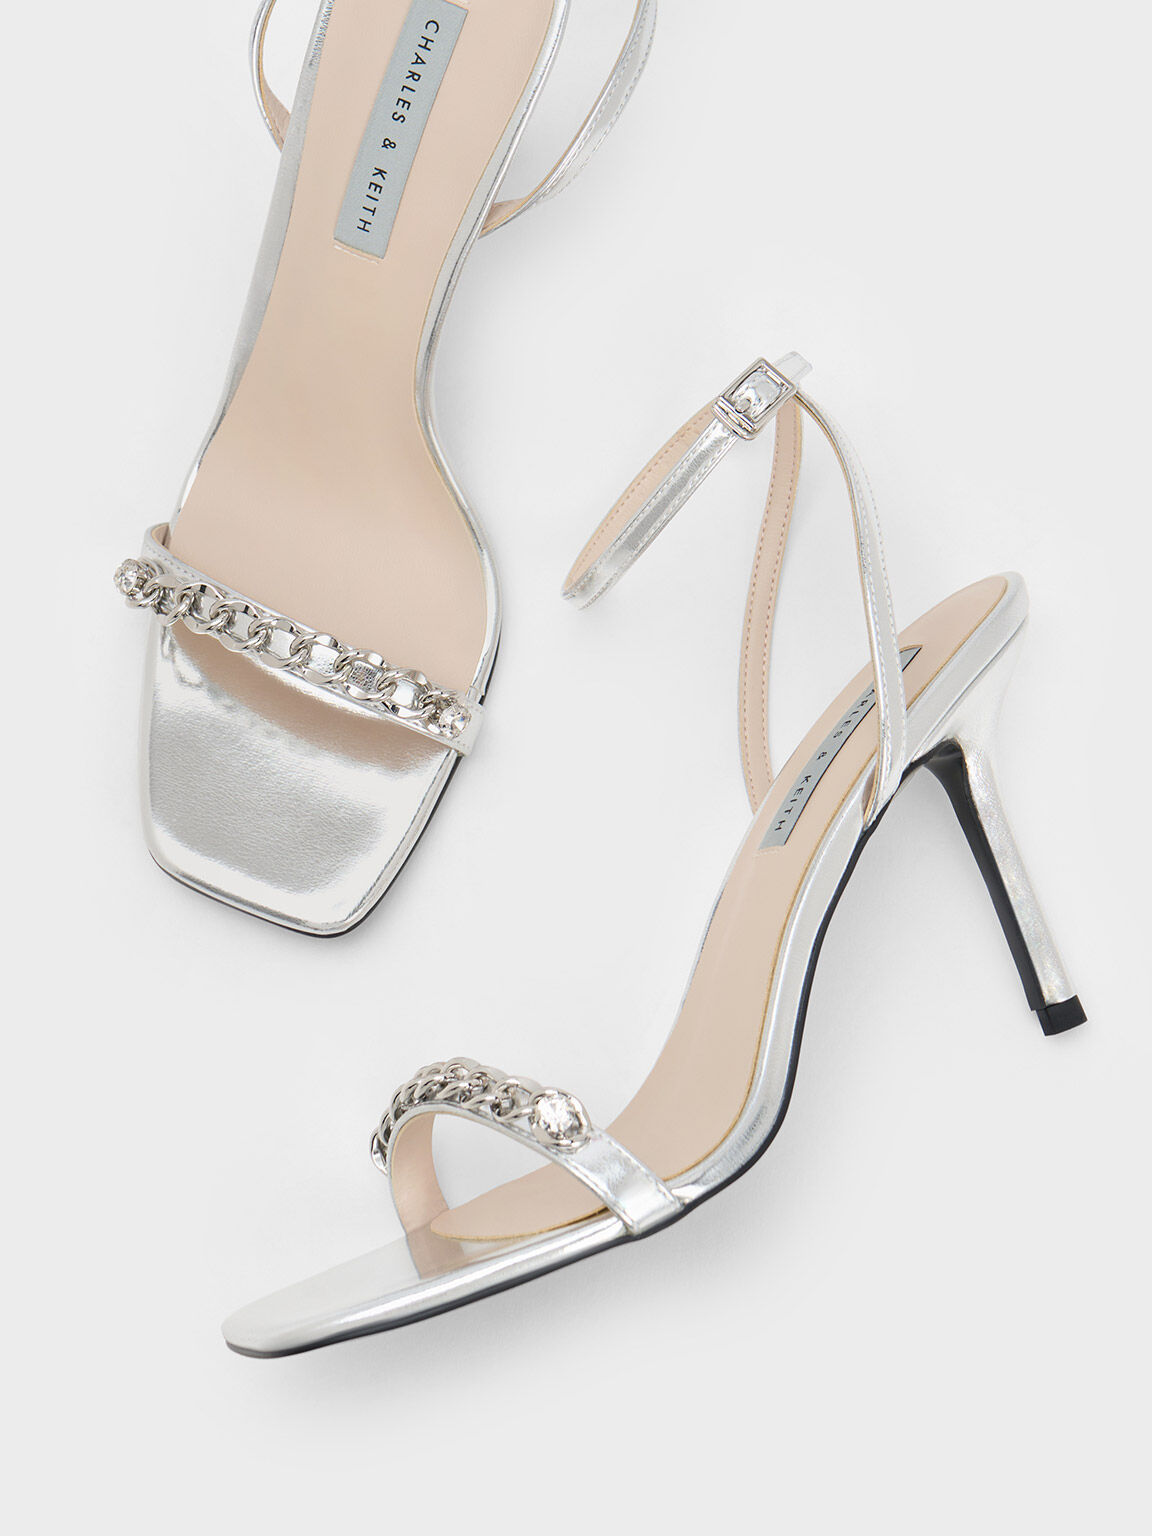 Sandal Ankle Strap Chain-Embellished, Silver, hi-res